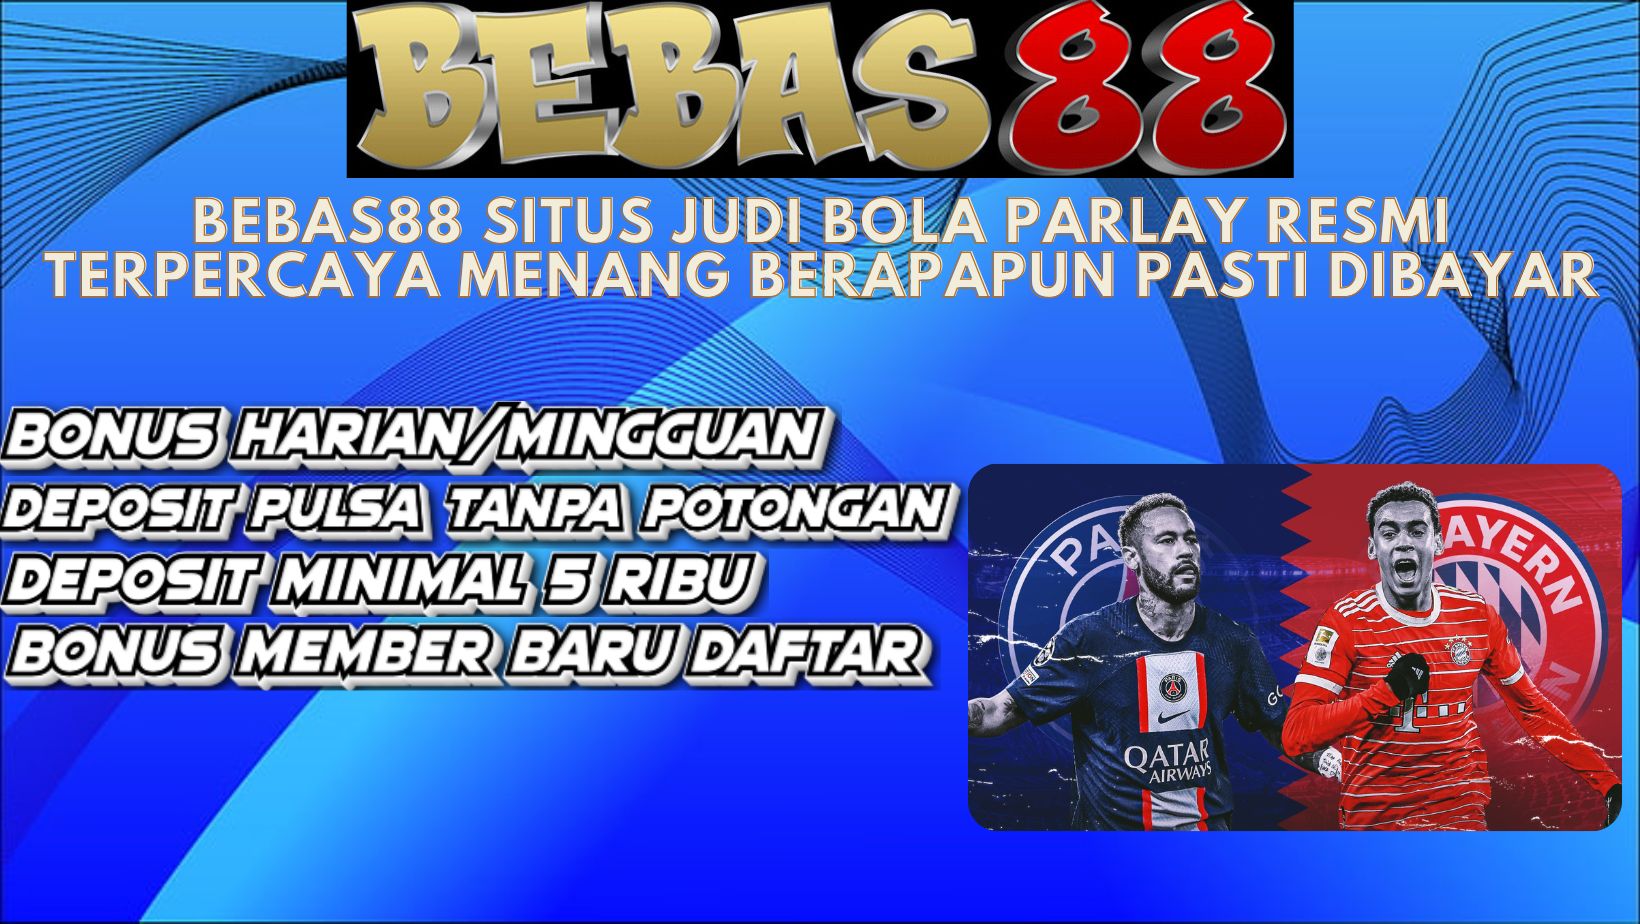 Bebas88 situs agen judi bola formal dan terpercaya di Indonesia. Bebas 88 menjadi keliru satu pilihan situs bandar bola